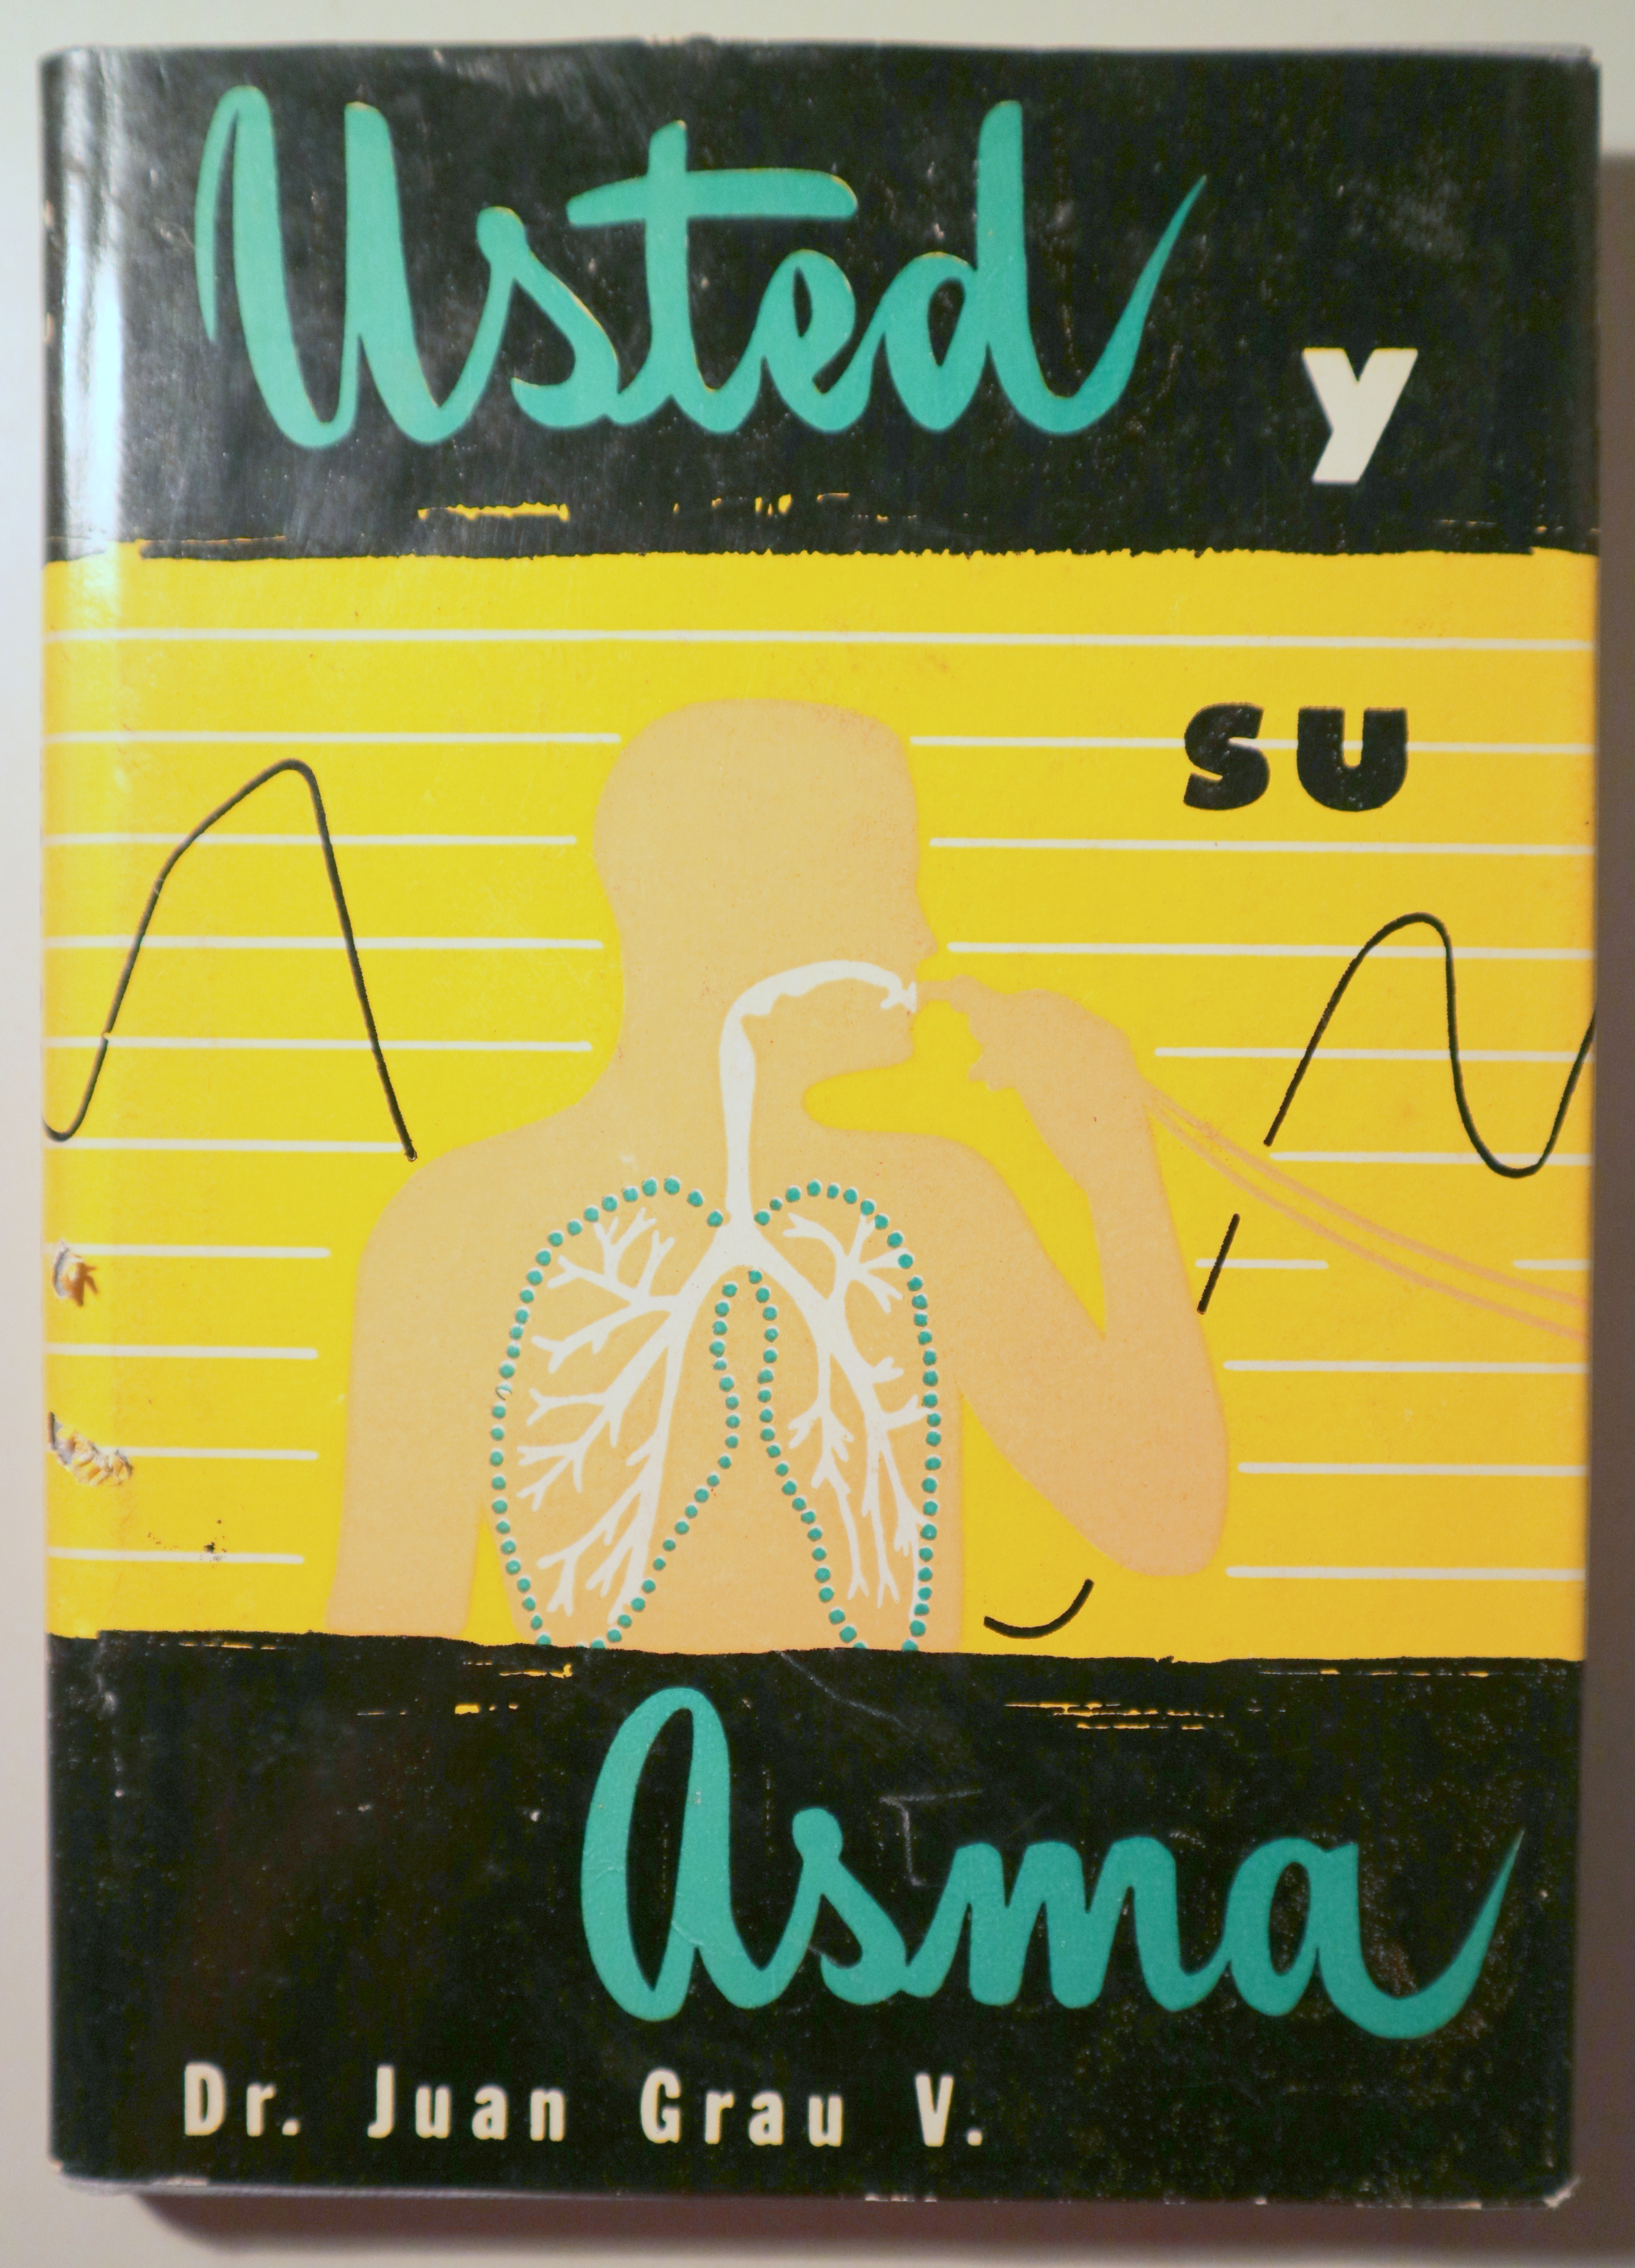 USTED Y SU ASMA - Barcelona 1963 - Ilustrado